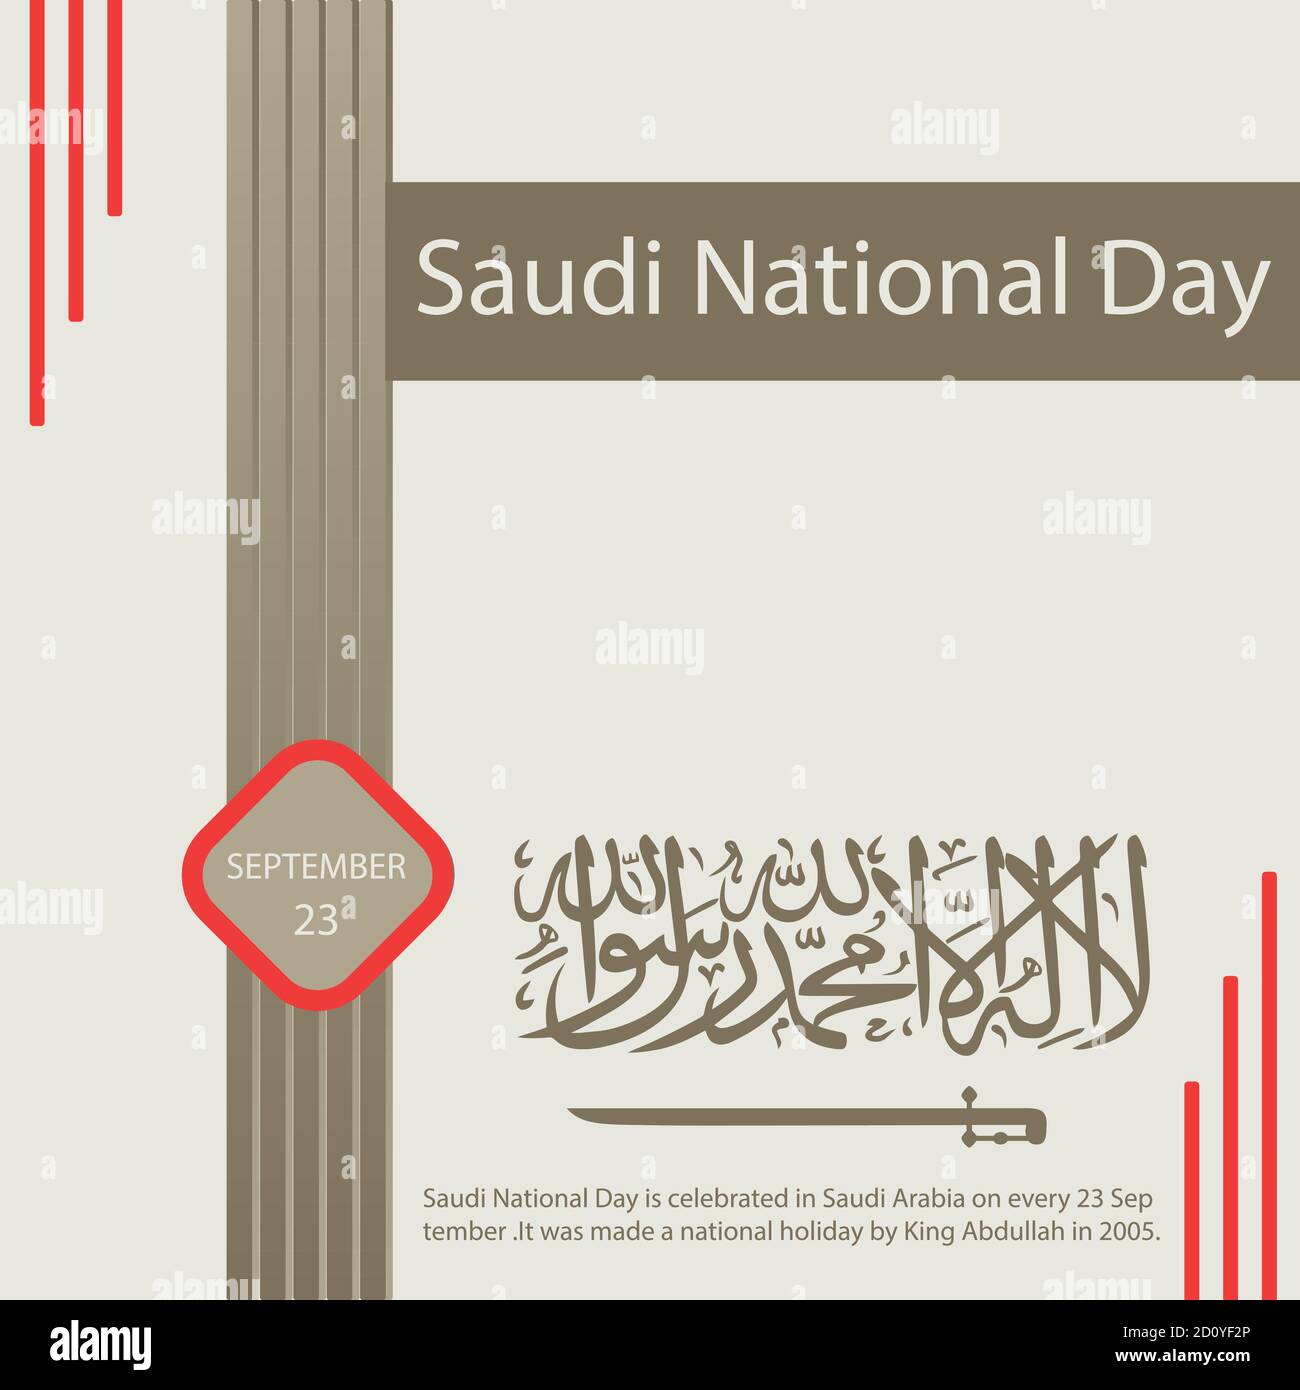 La Giornata nazionale Saudita viene celebrata in Arabia Saudita ogni 23 settembre. Nel 2005 è stata celebrata una festa nazionale dal re Abdullah. Illustrazione Vettoriale